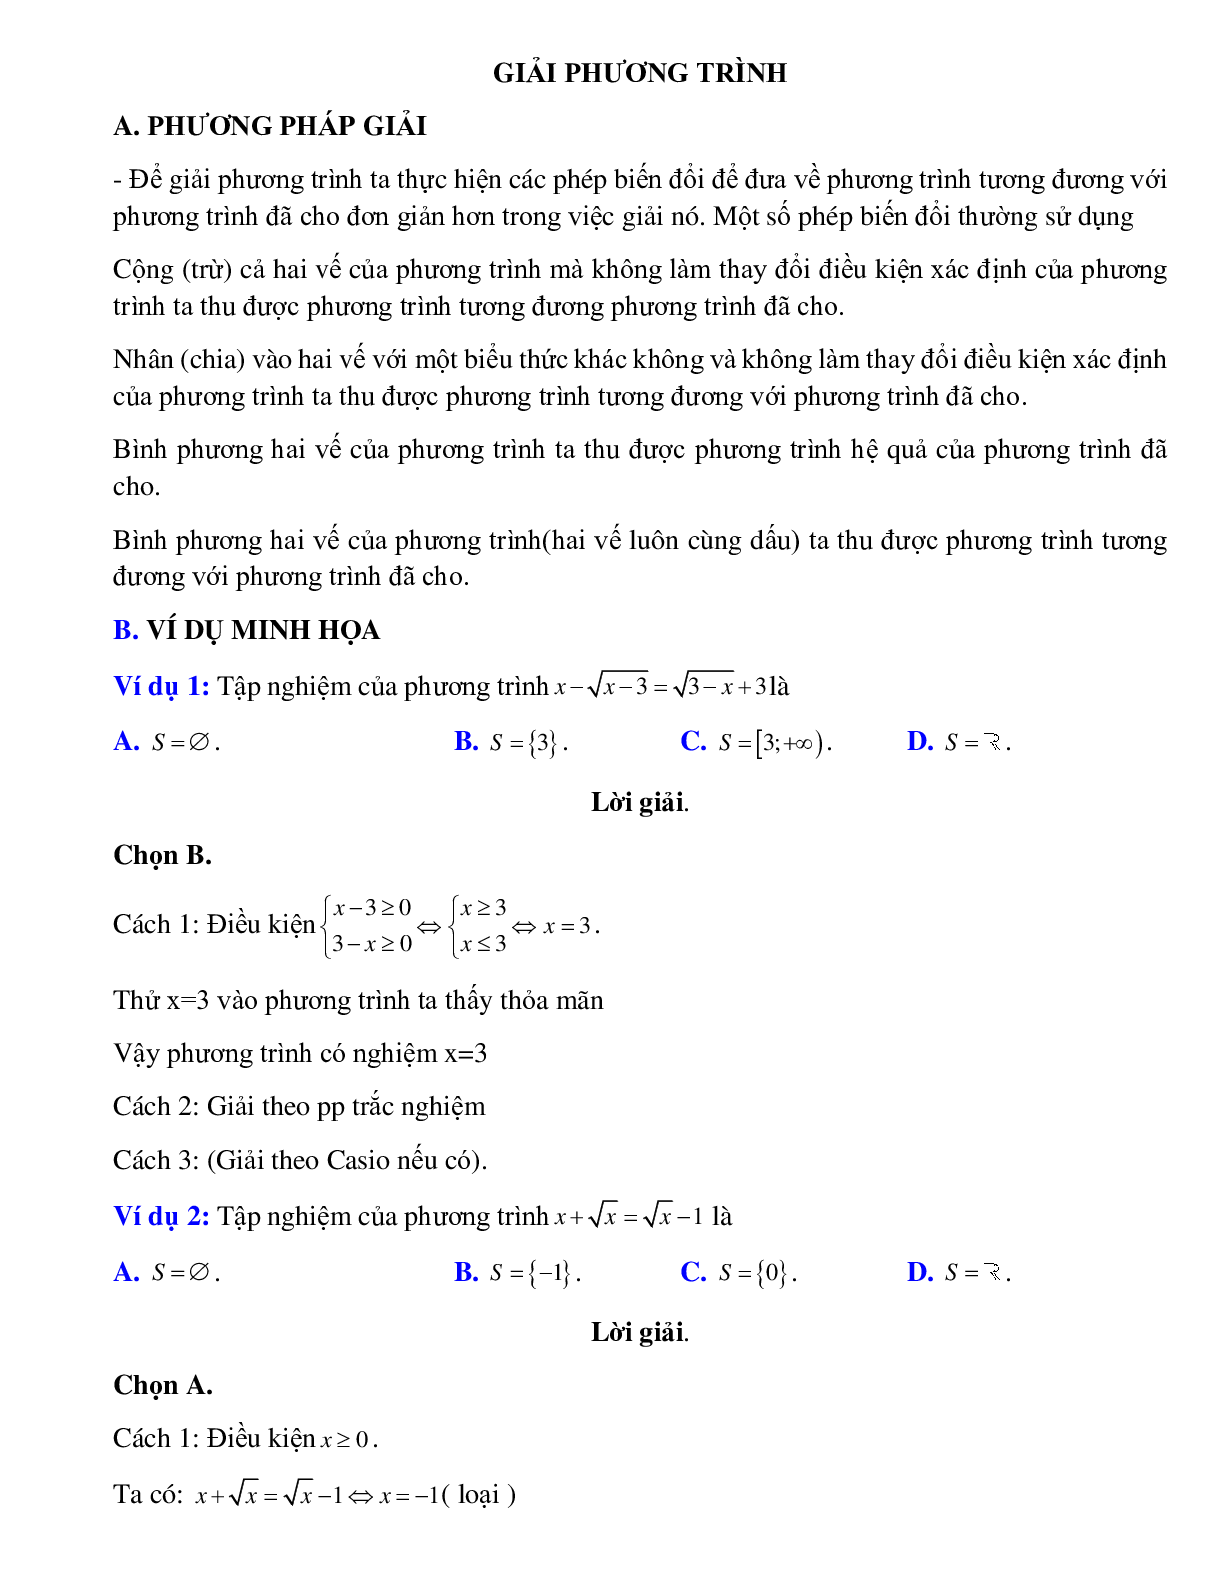 Giải phương trình (trang 1)